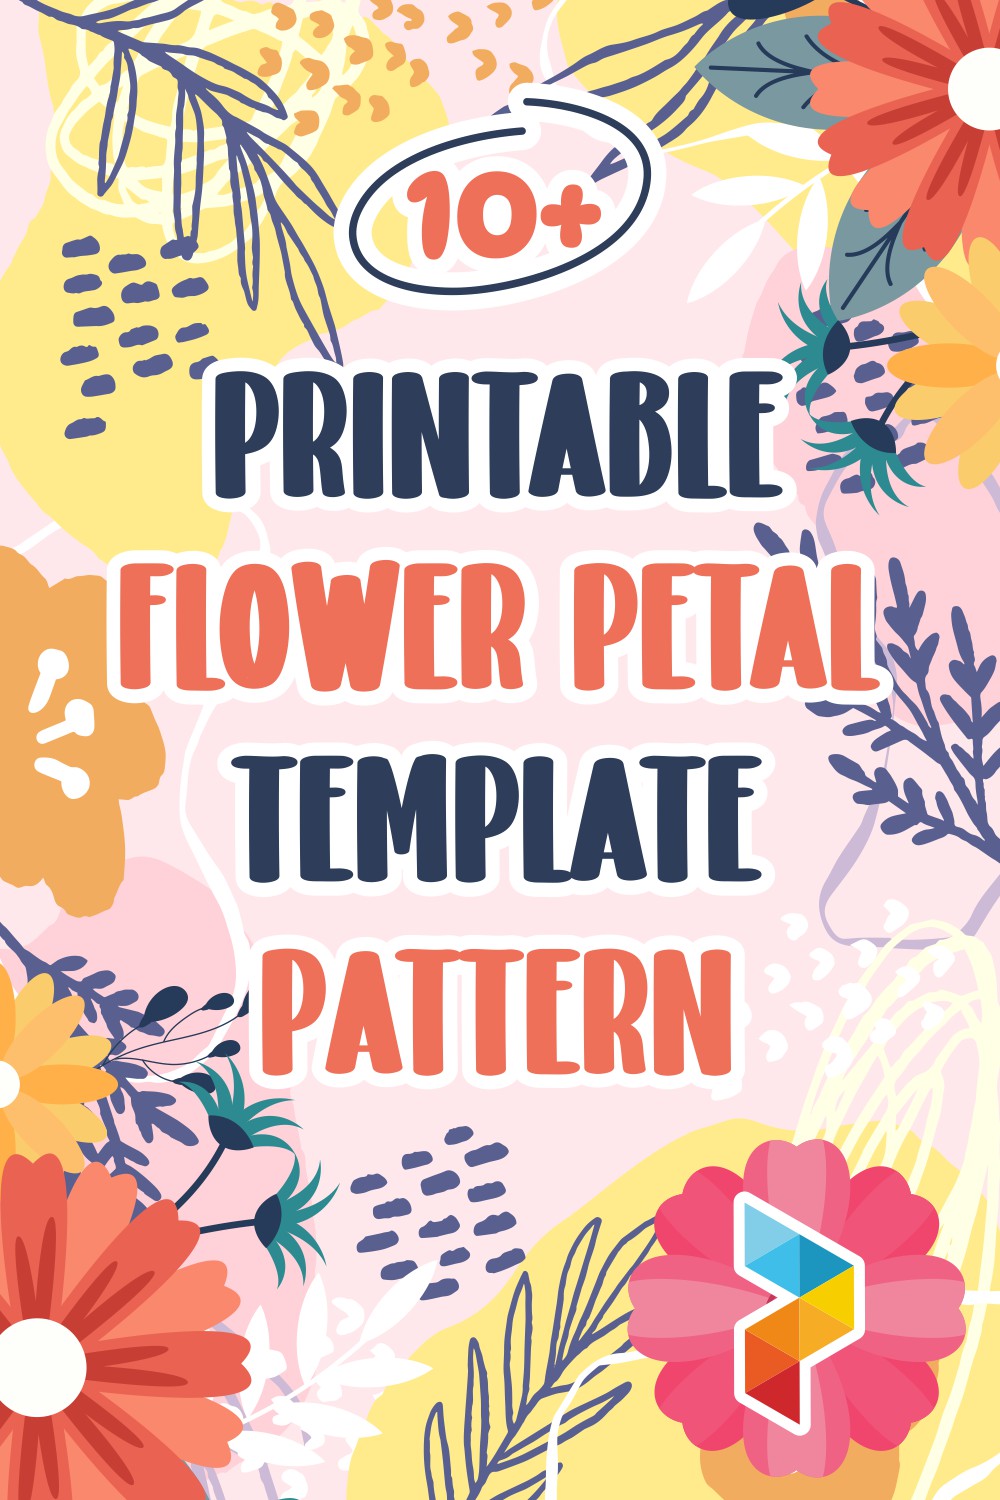 Flower Petal Template Pattern